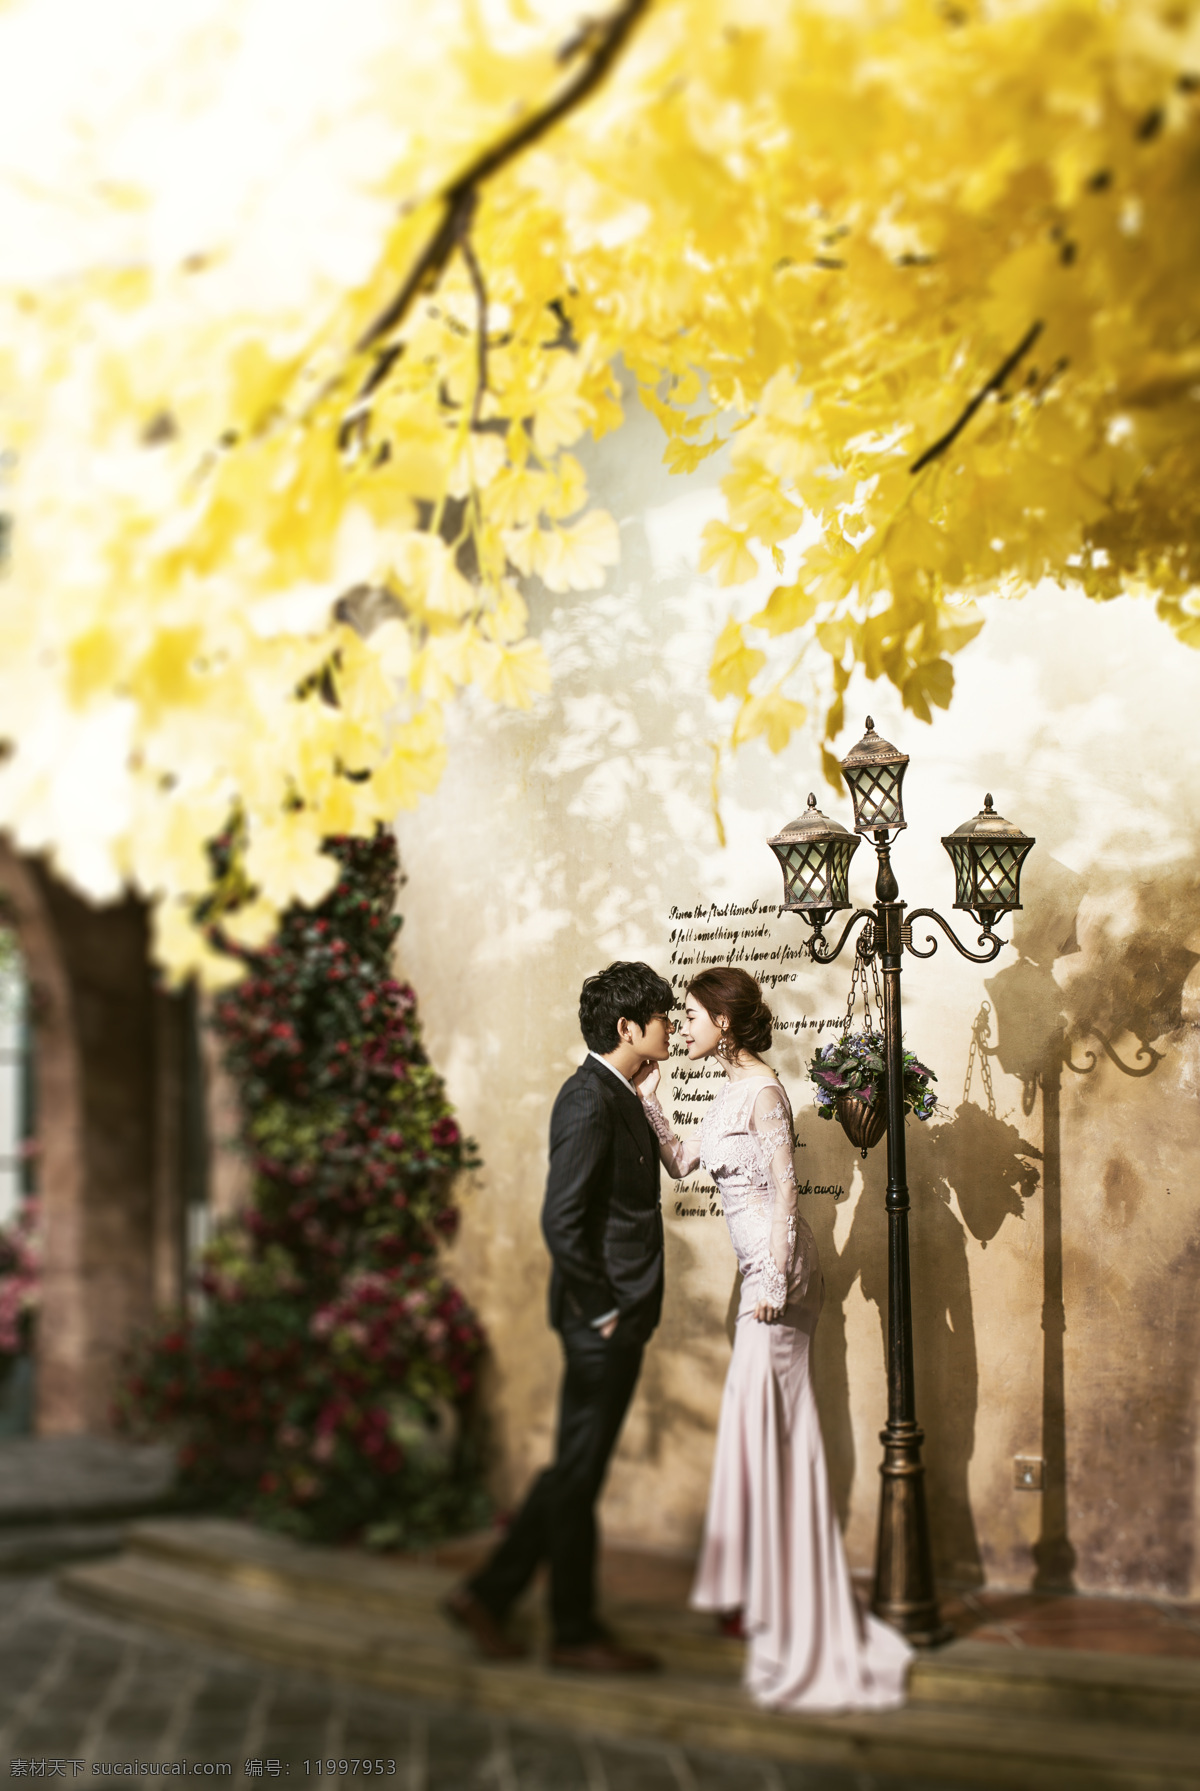 韩式 婚纱摄影 枫叶 路灯 欧式 中式 双人 结婚照 婚照 人物图库 人物摄影